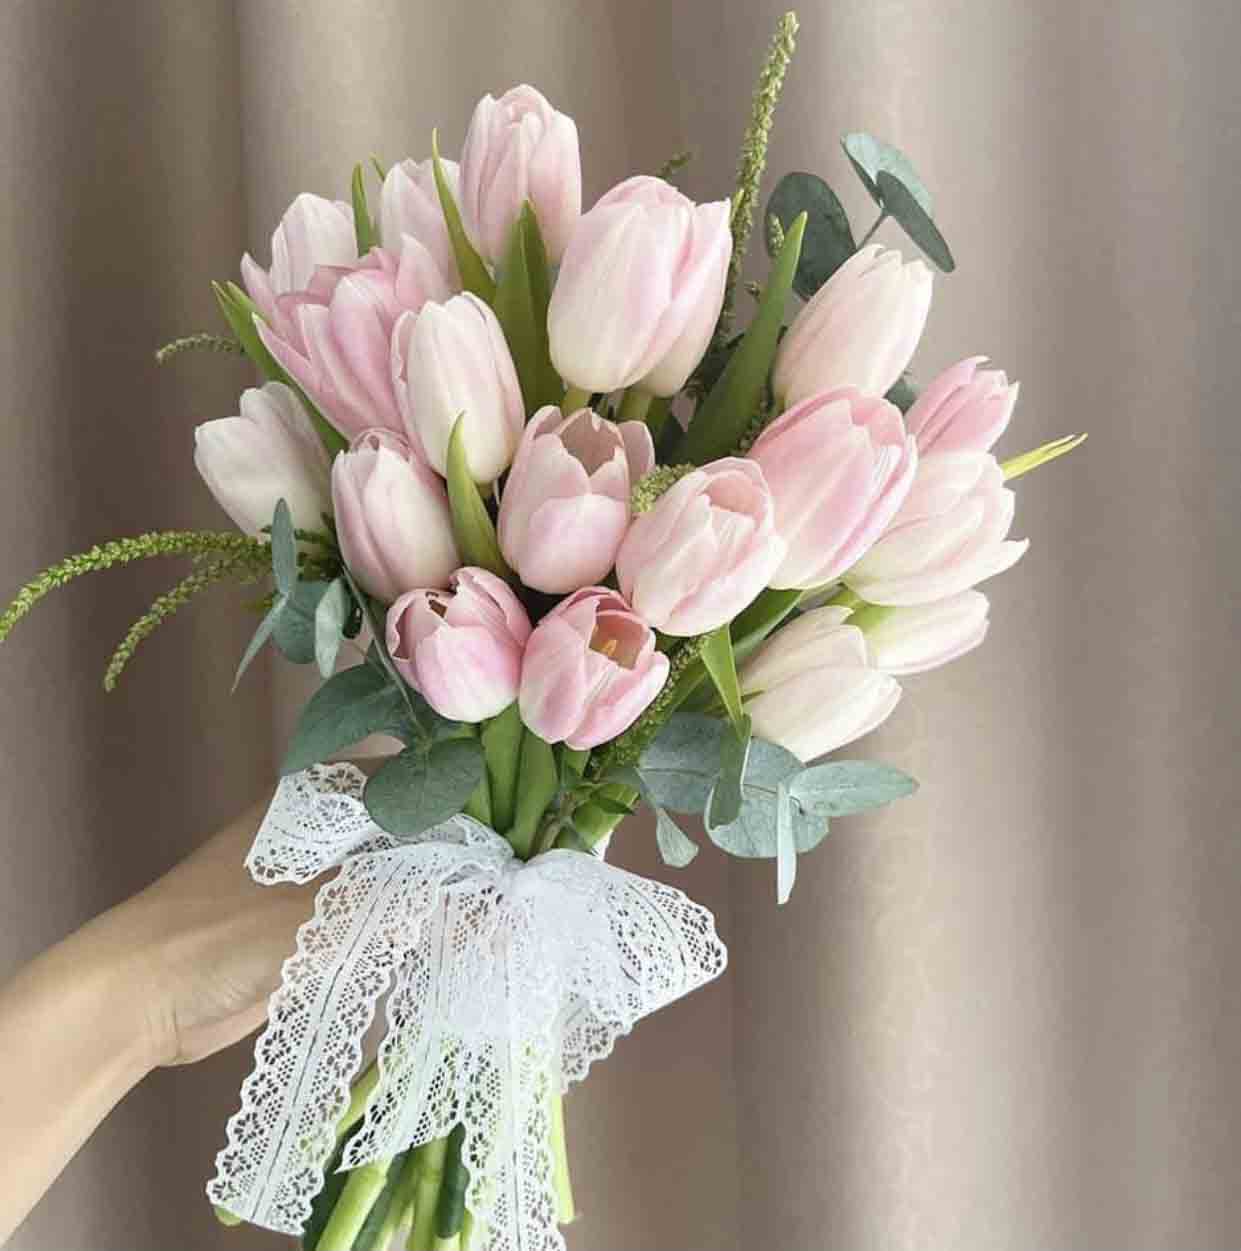 Bó hoa cưới cầm tay cô dâu đẹp - Hoa tulip hồng ý nghĩa tại Cầu Giấy, Hà Nội